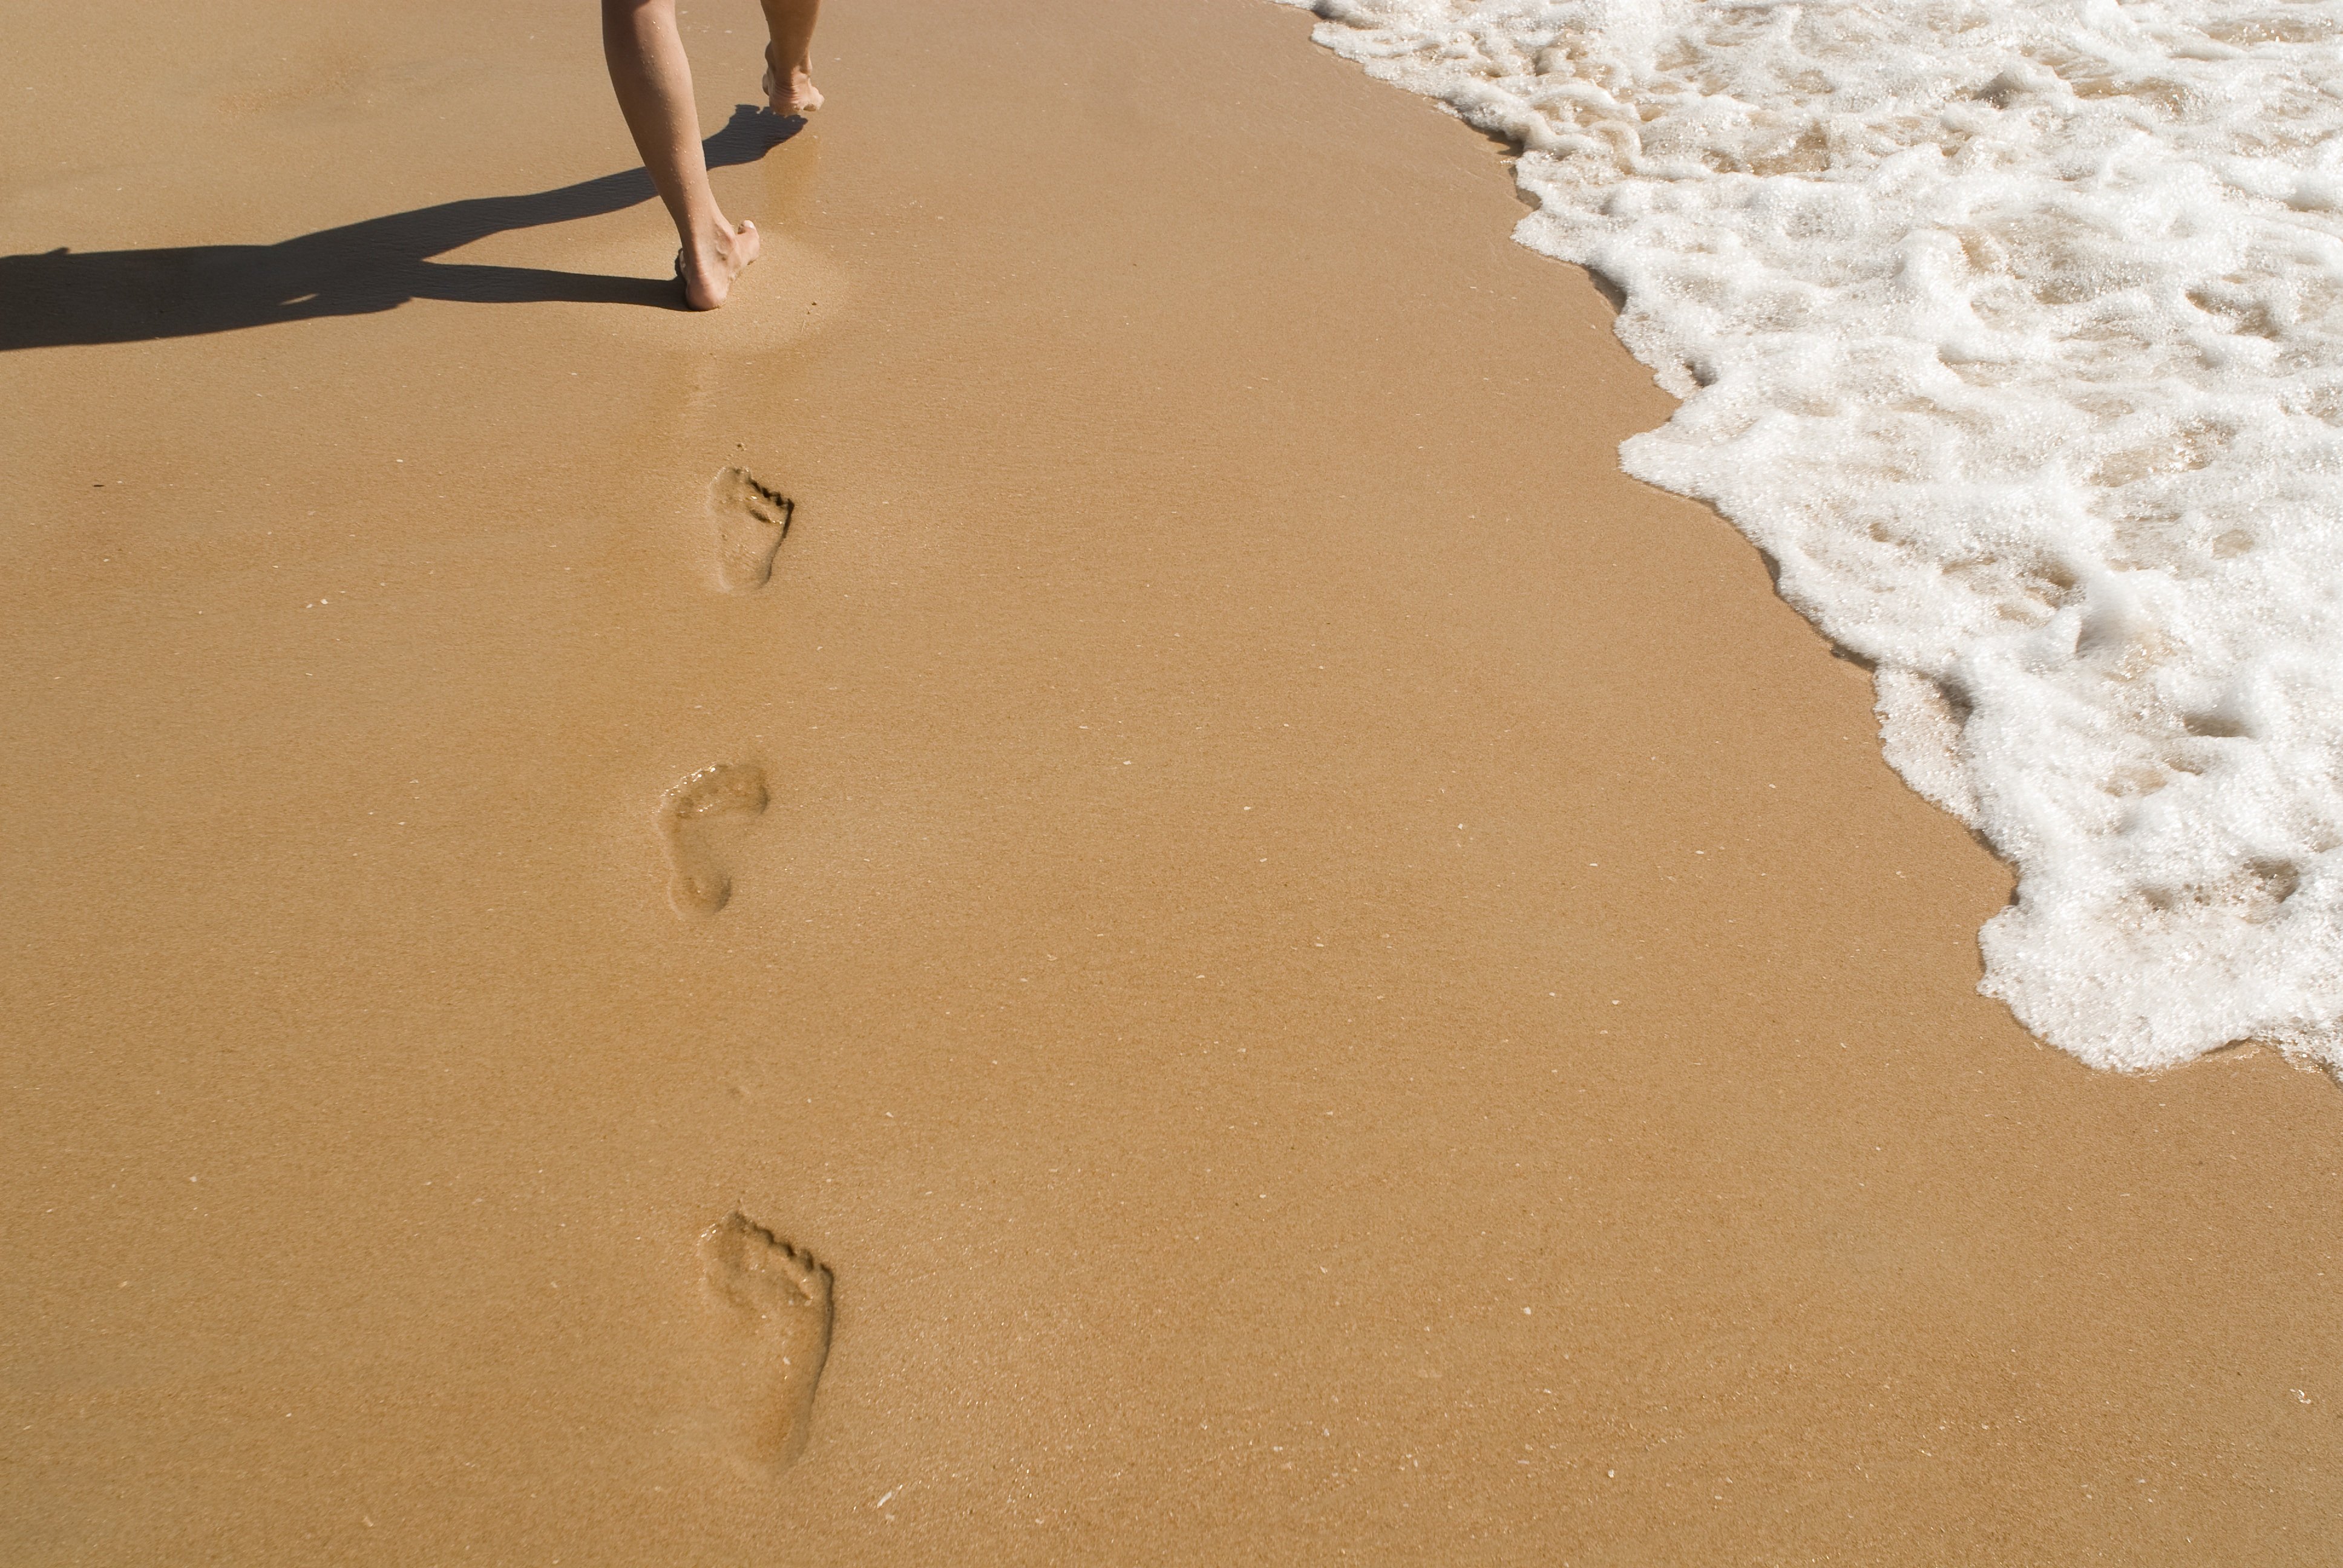 Песня иду по следу. Следы на песке. Следы человека на песке. Пляж песок. След стопы на песке.